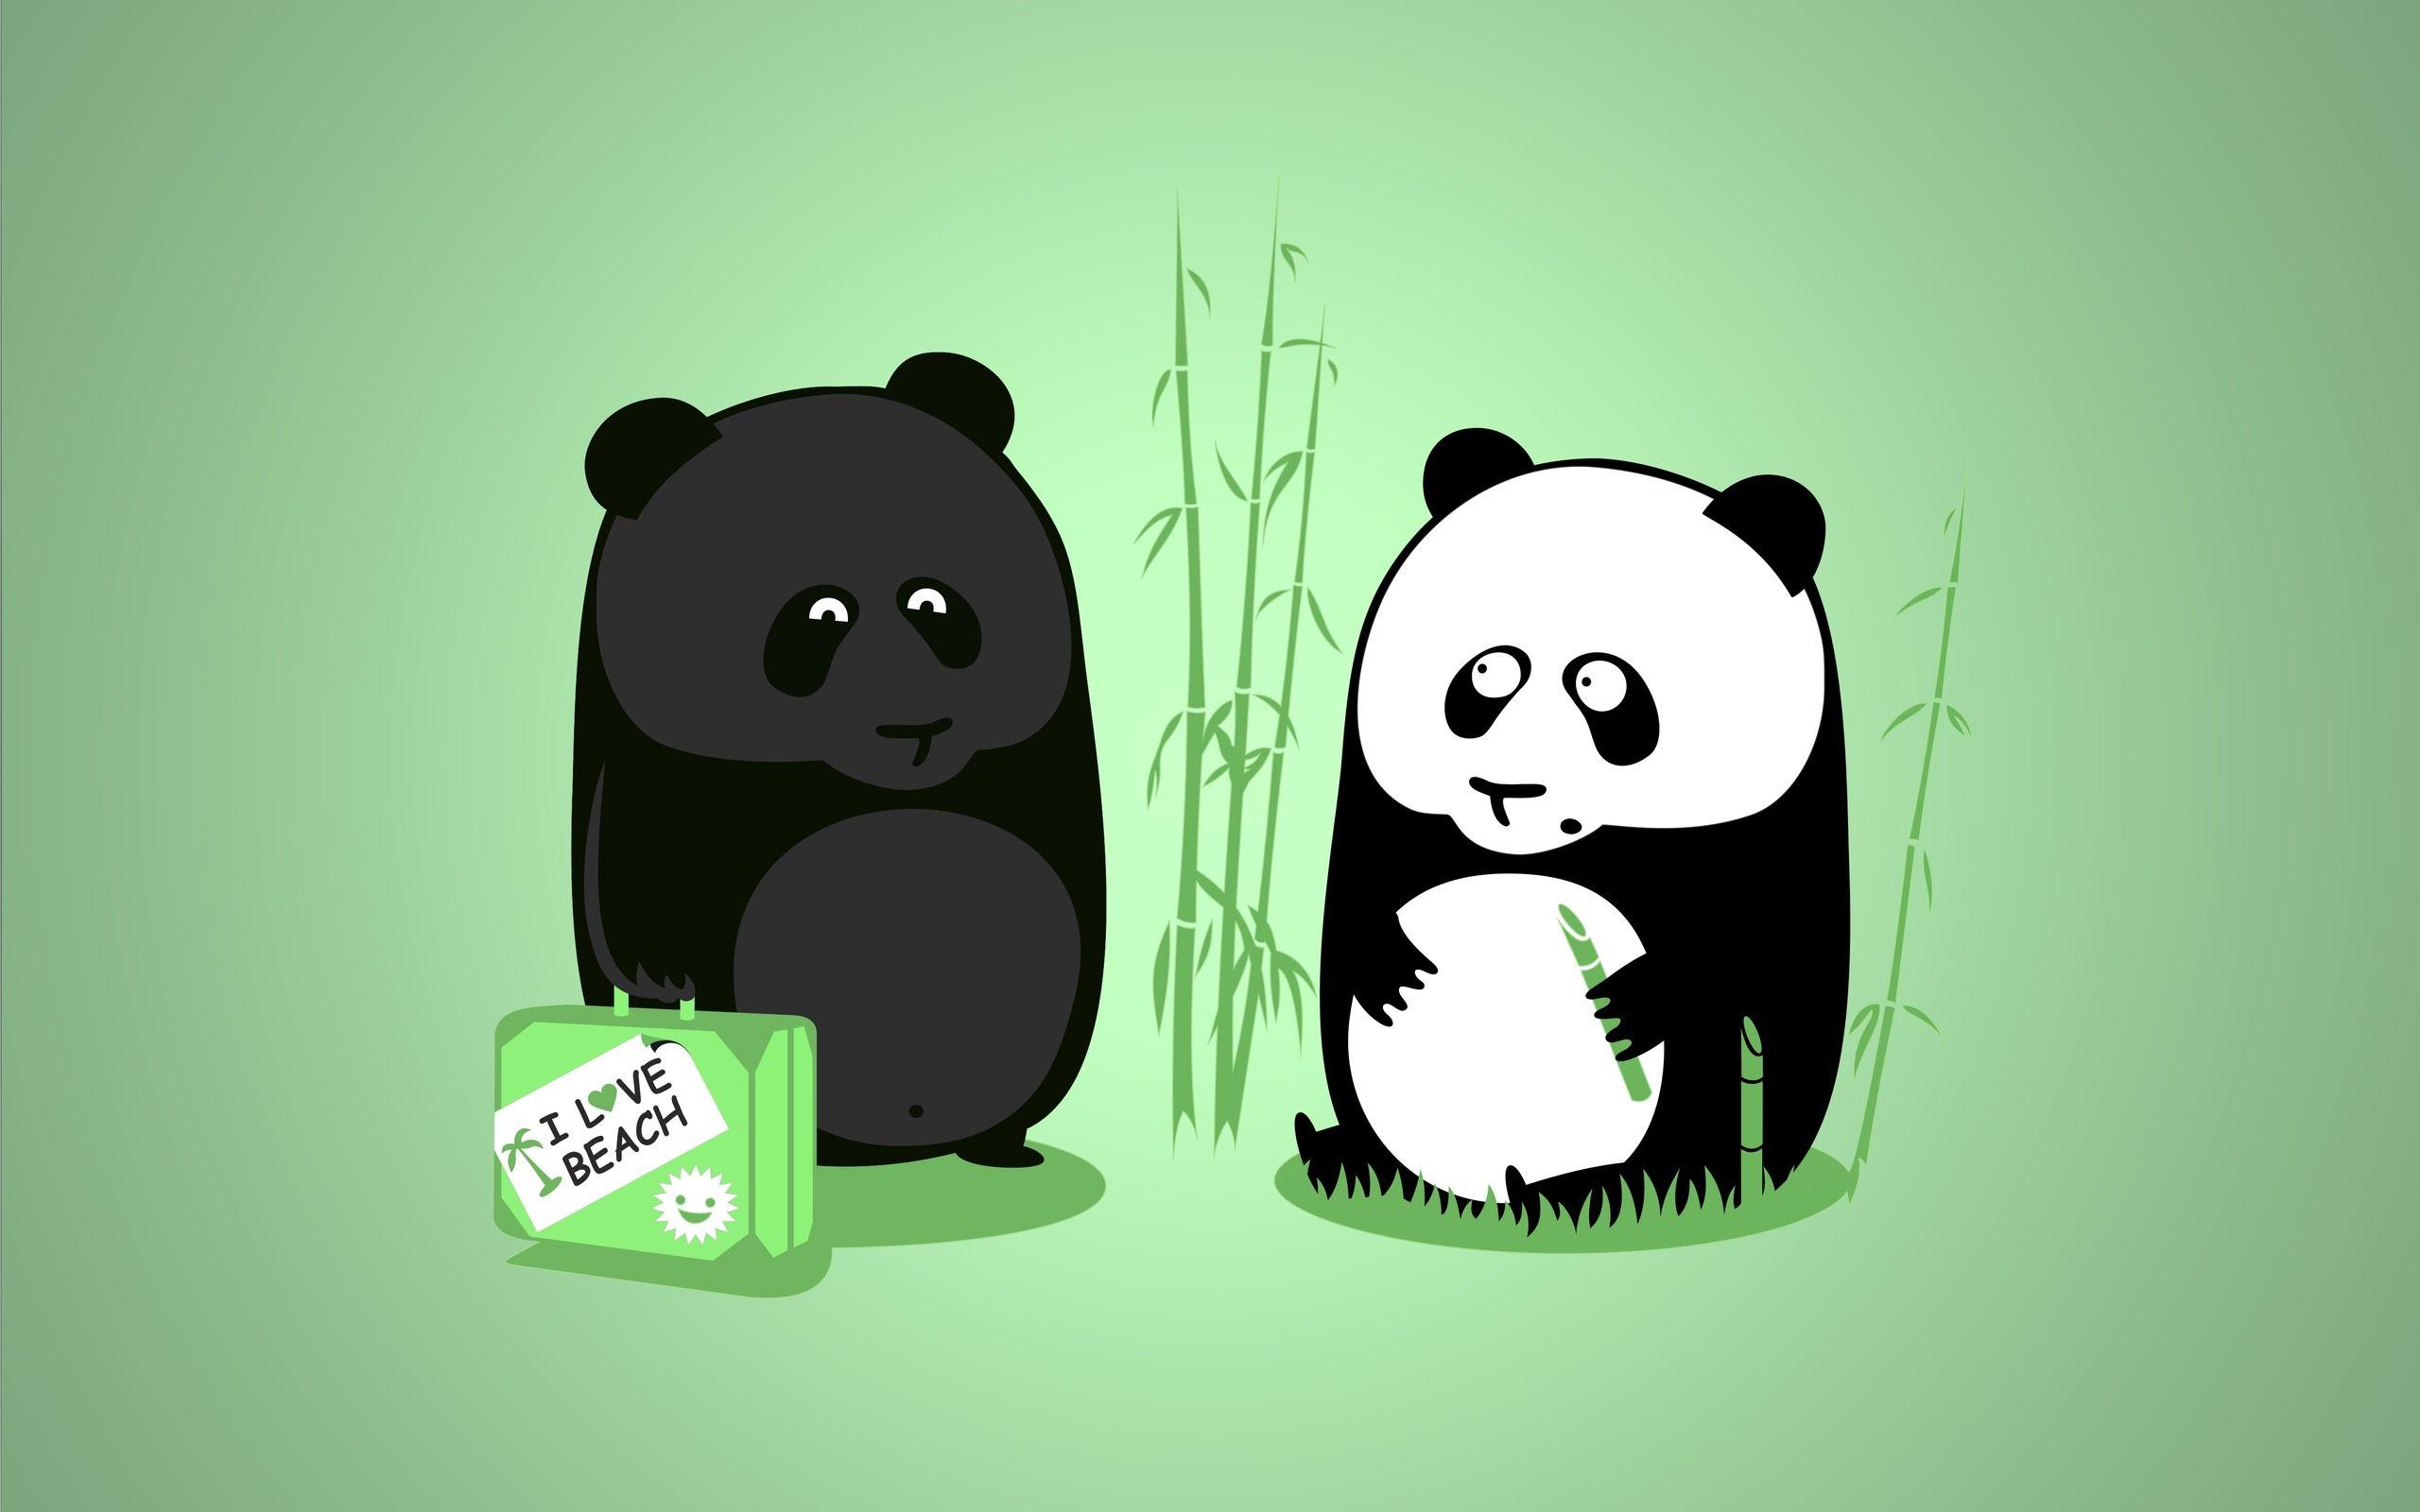 Cartoon Panda Wallpaper